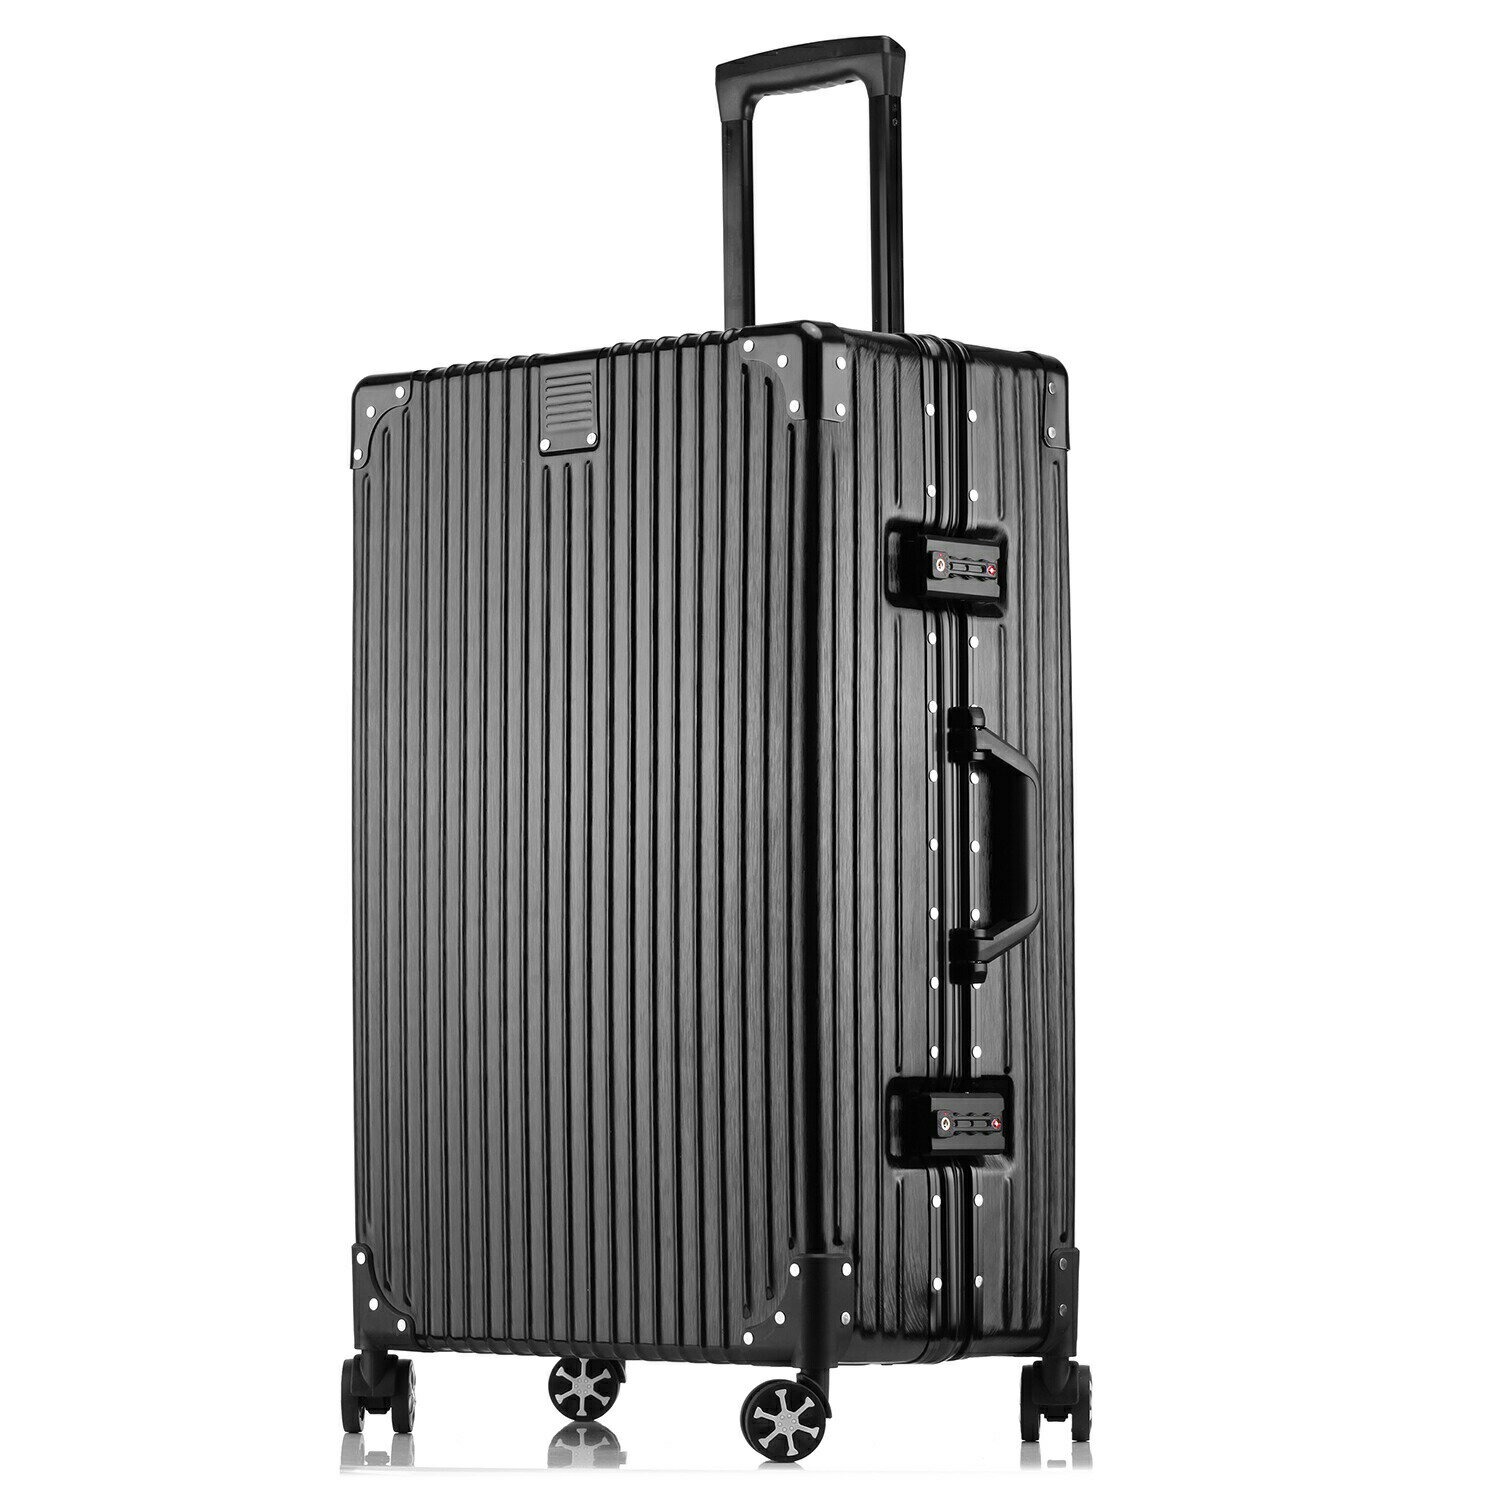 スーツケース 2XLサイズ キャリーバッグ キャリーケース トランクケース トロリーケース アルミフレーム 軽量 ダブル 大容量 空港 旅行カバン 世界基準 TSAロック ダイヤルロック 46*27.5*70.5cm 89L 送料無料